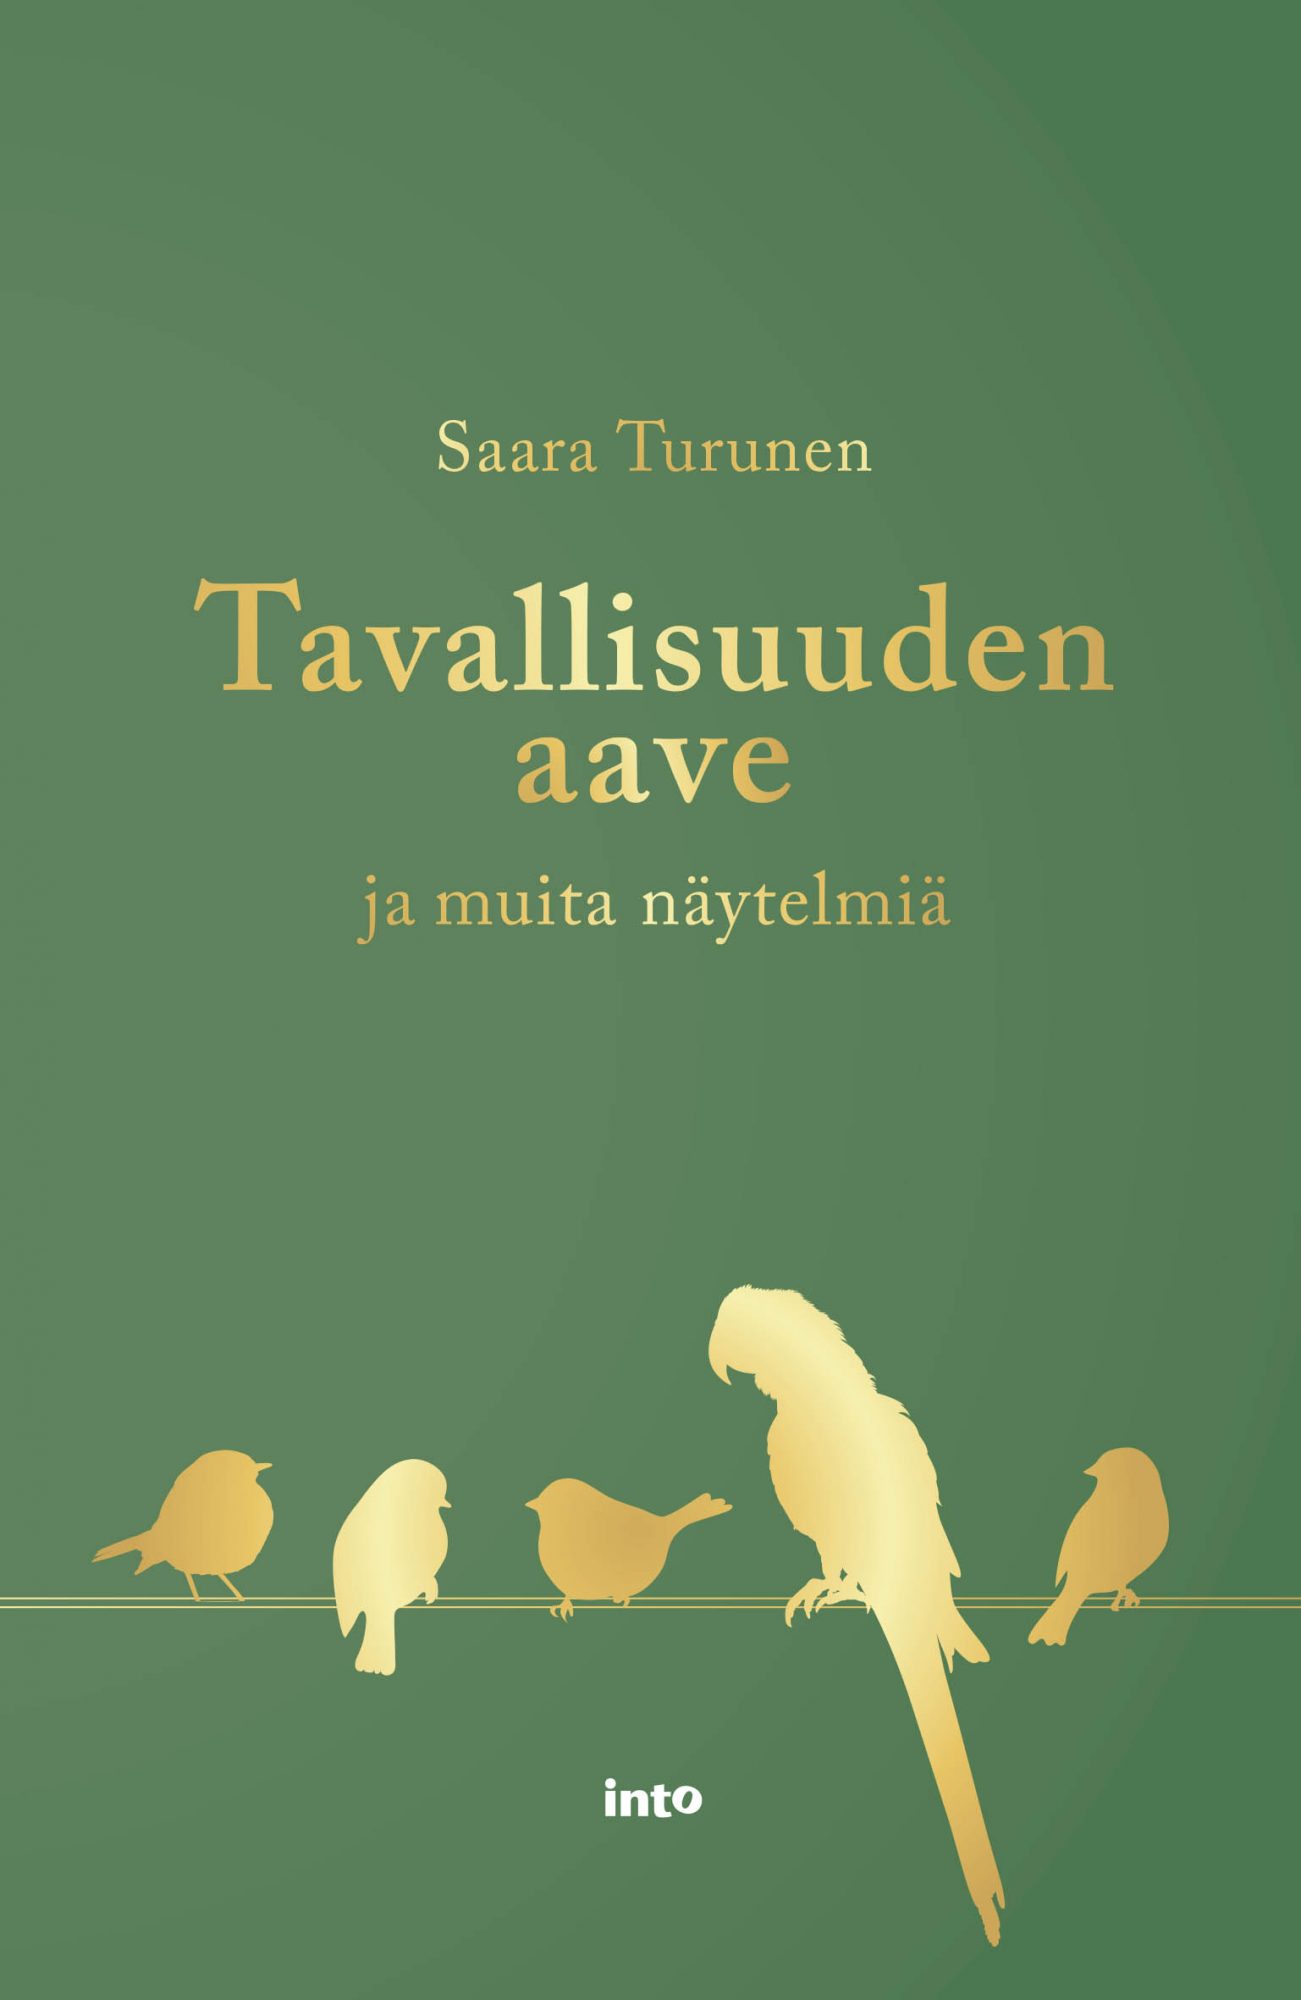 Tavallisuuden aave ja muita näytelmiä (Finnish language, 2019)